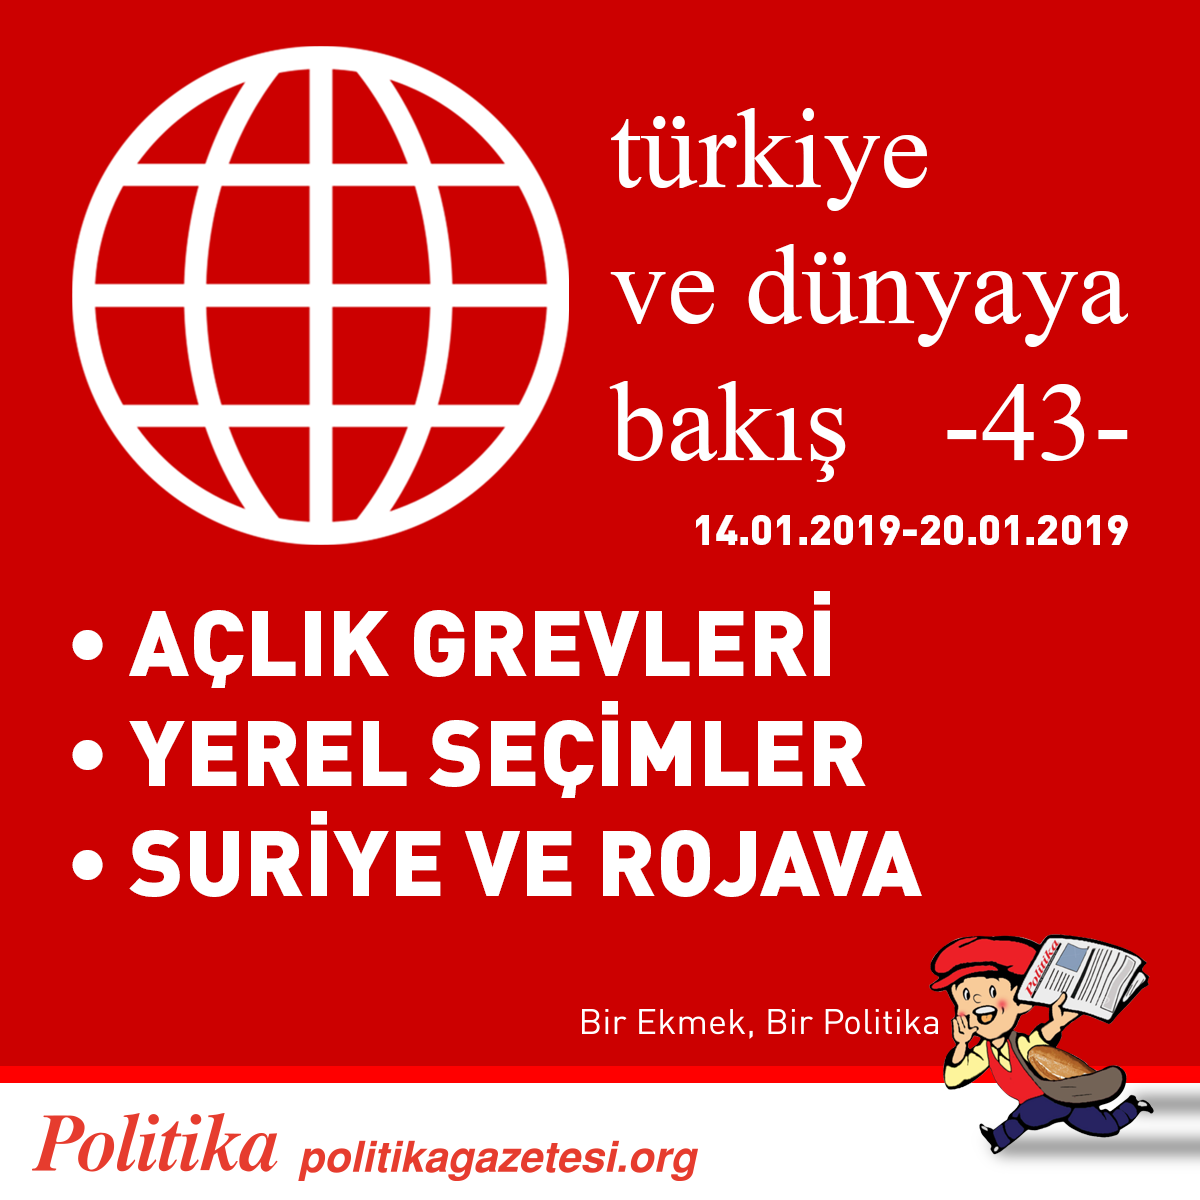 POLİTİKA’DAN GEÇMİŞ HAFTAYA BAKIŞ 14.01.2019-20.01.2019